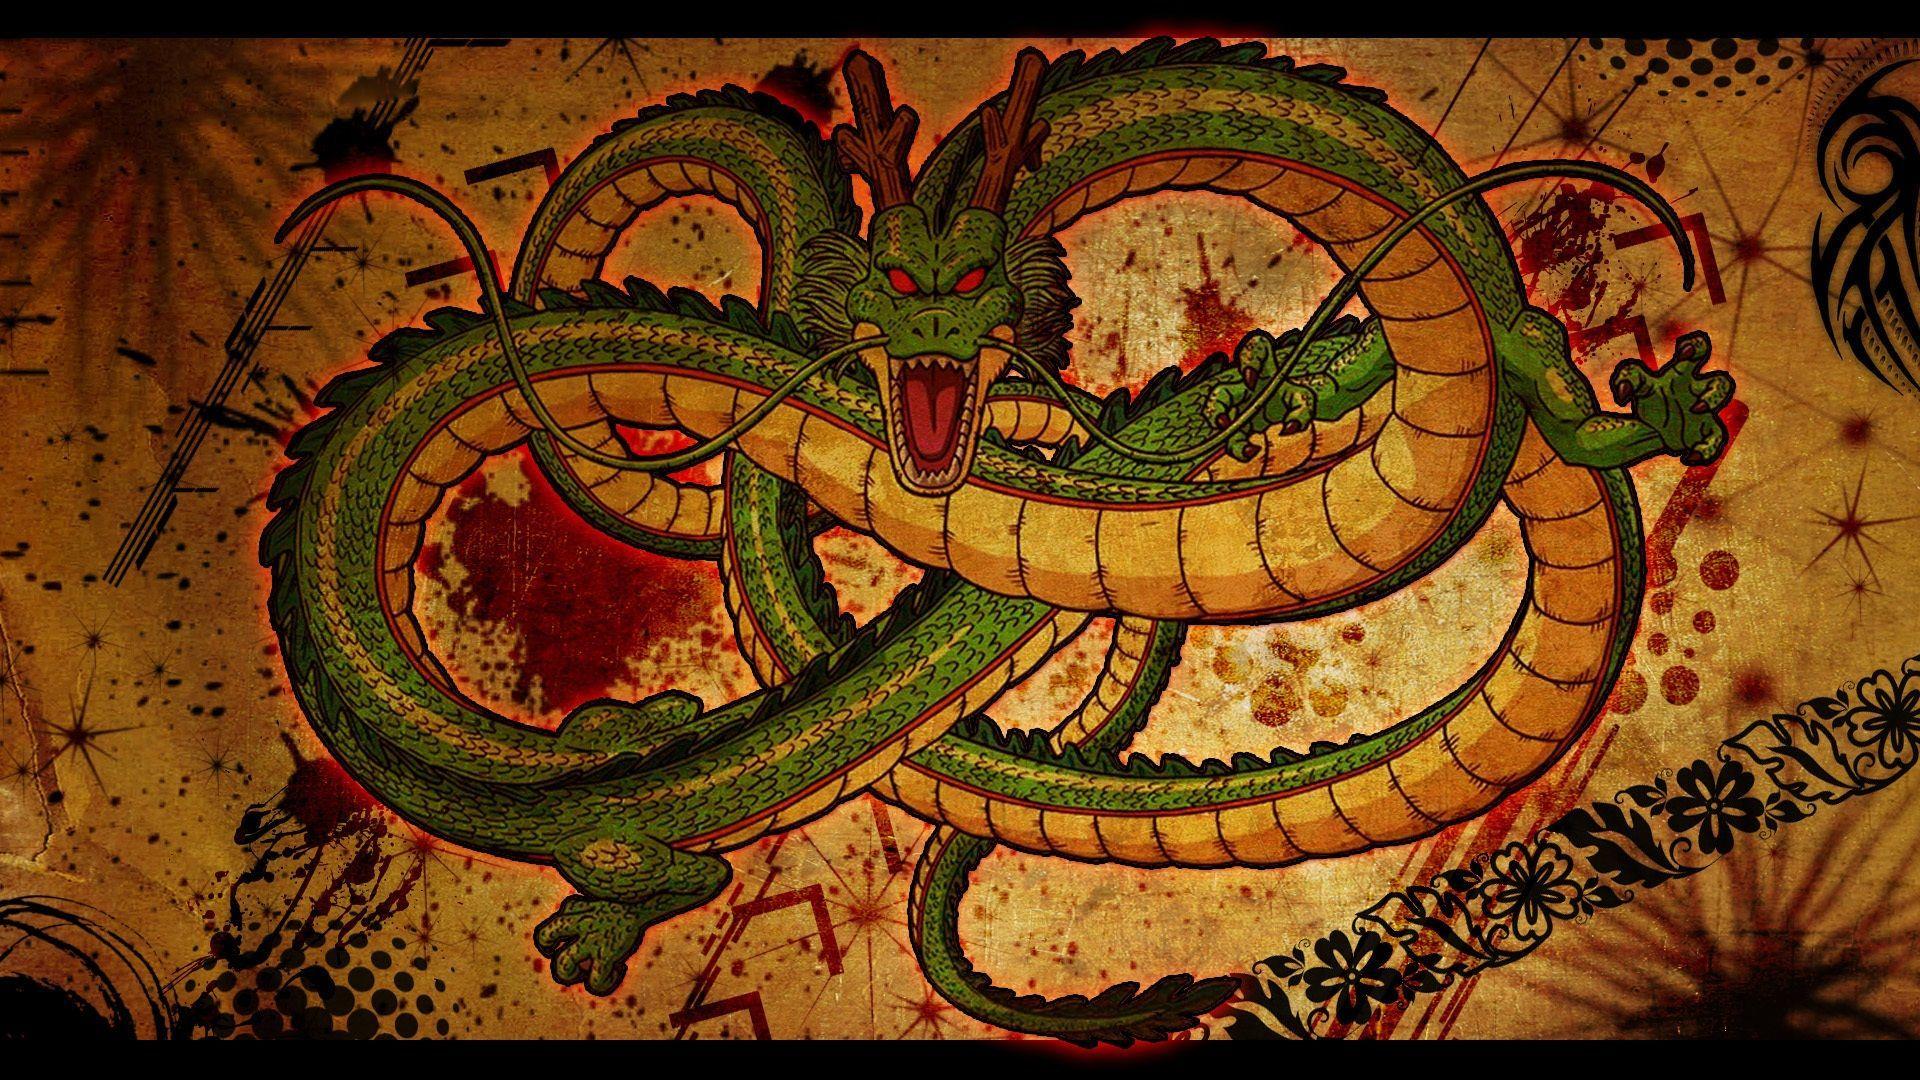 Japan Dragon Wallpaper